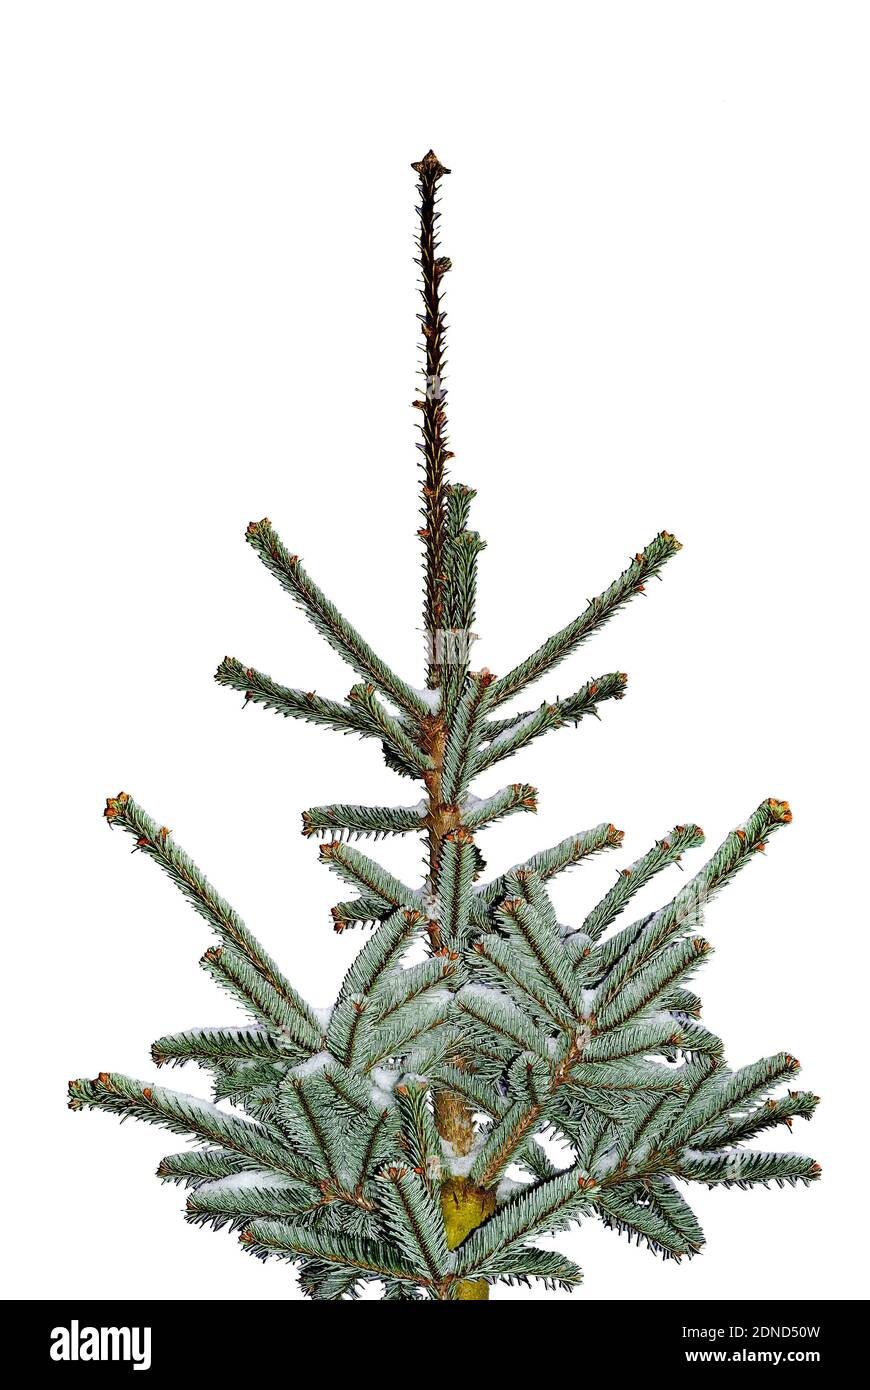 Weihnachtsbaum mit leichtem Schnee bedeckt - isoliert auf einem Weißer Hintergrund – Abstraktion - Nordmann Fir (Abies nordmanniana) Stockfoto